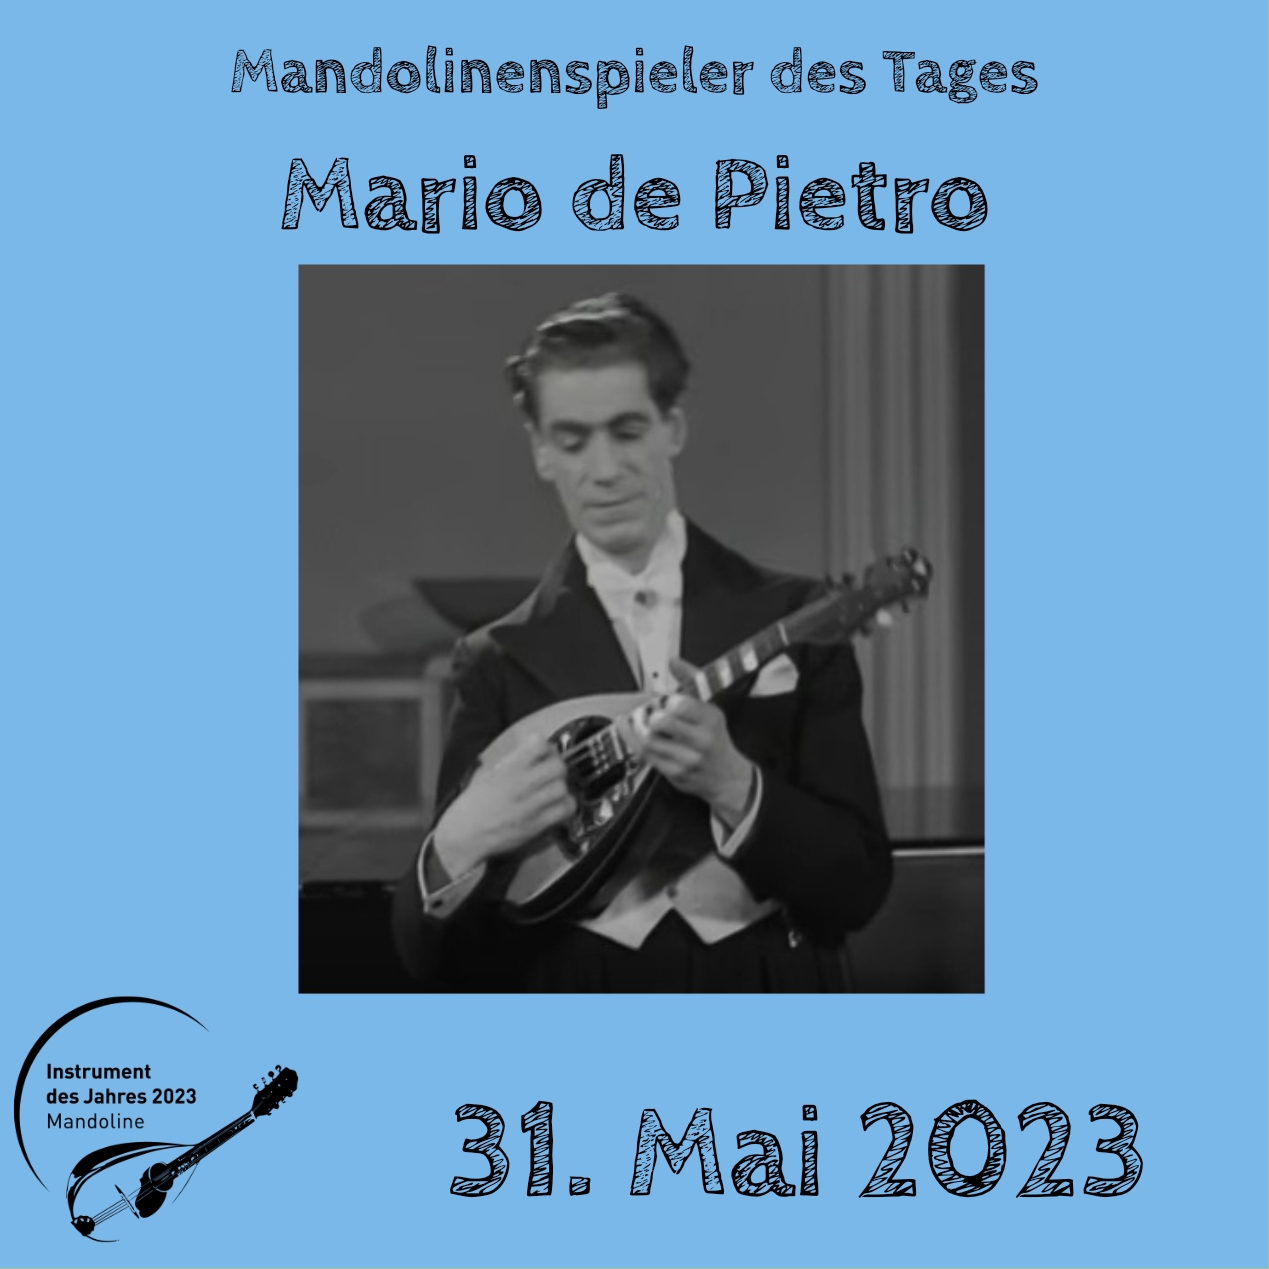 Mario de Pietro Mandoline Instrument des Jahres 2023 Mandolinenspieler Mandolinenspielerin des Tages